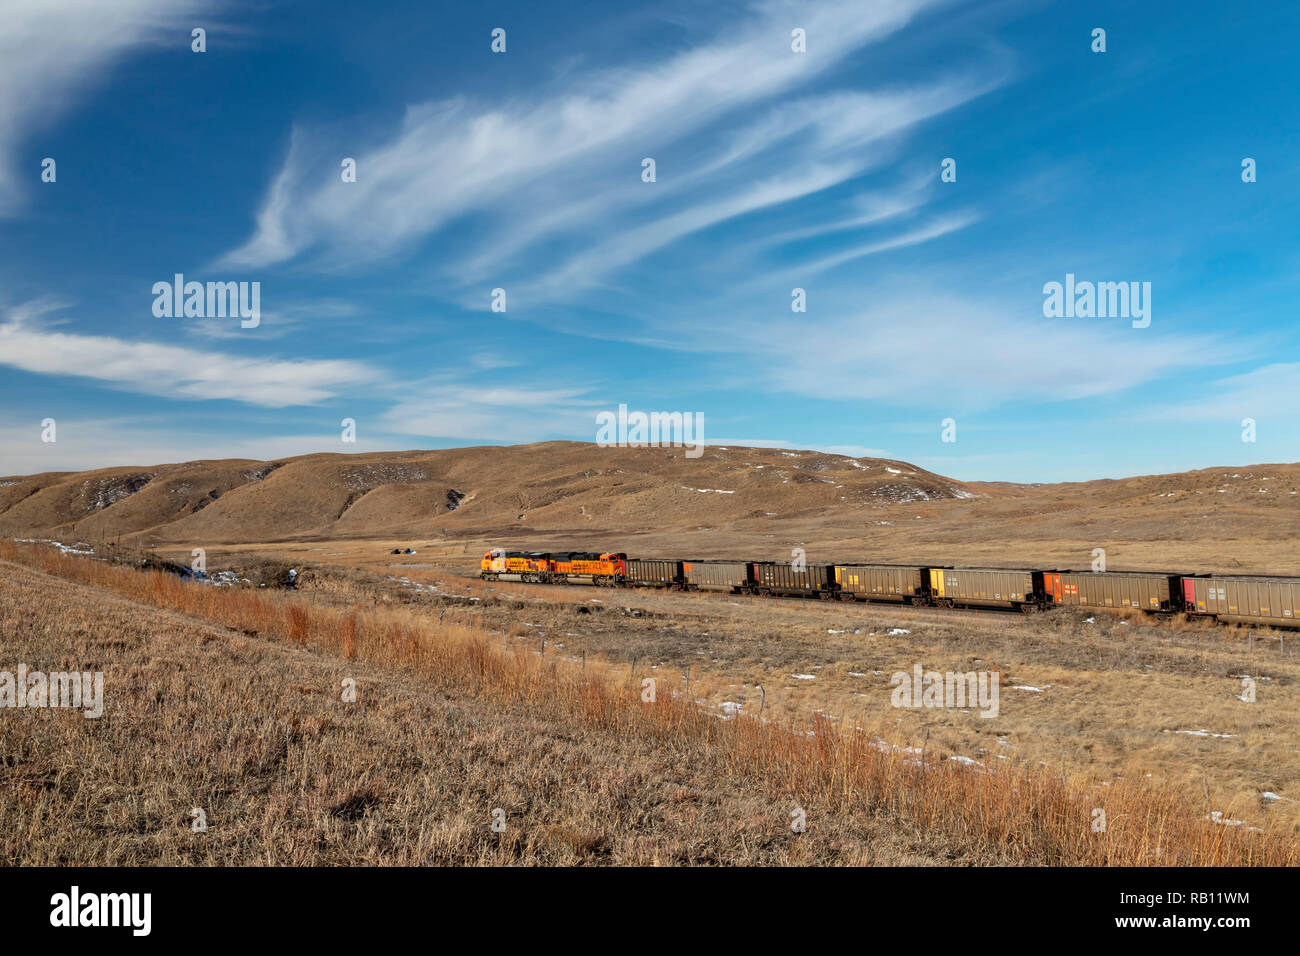 Hyannis, Nebraska - EIN BNSF Kohlenzug im Sand Hills von Nebraska. Jeden Tag, so viele wie 100 Kohle Züge, jedes ungefähr eine Meile lang, Lieferung von Kohle aus W Stockfoto